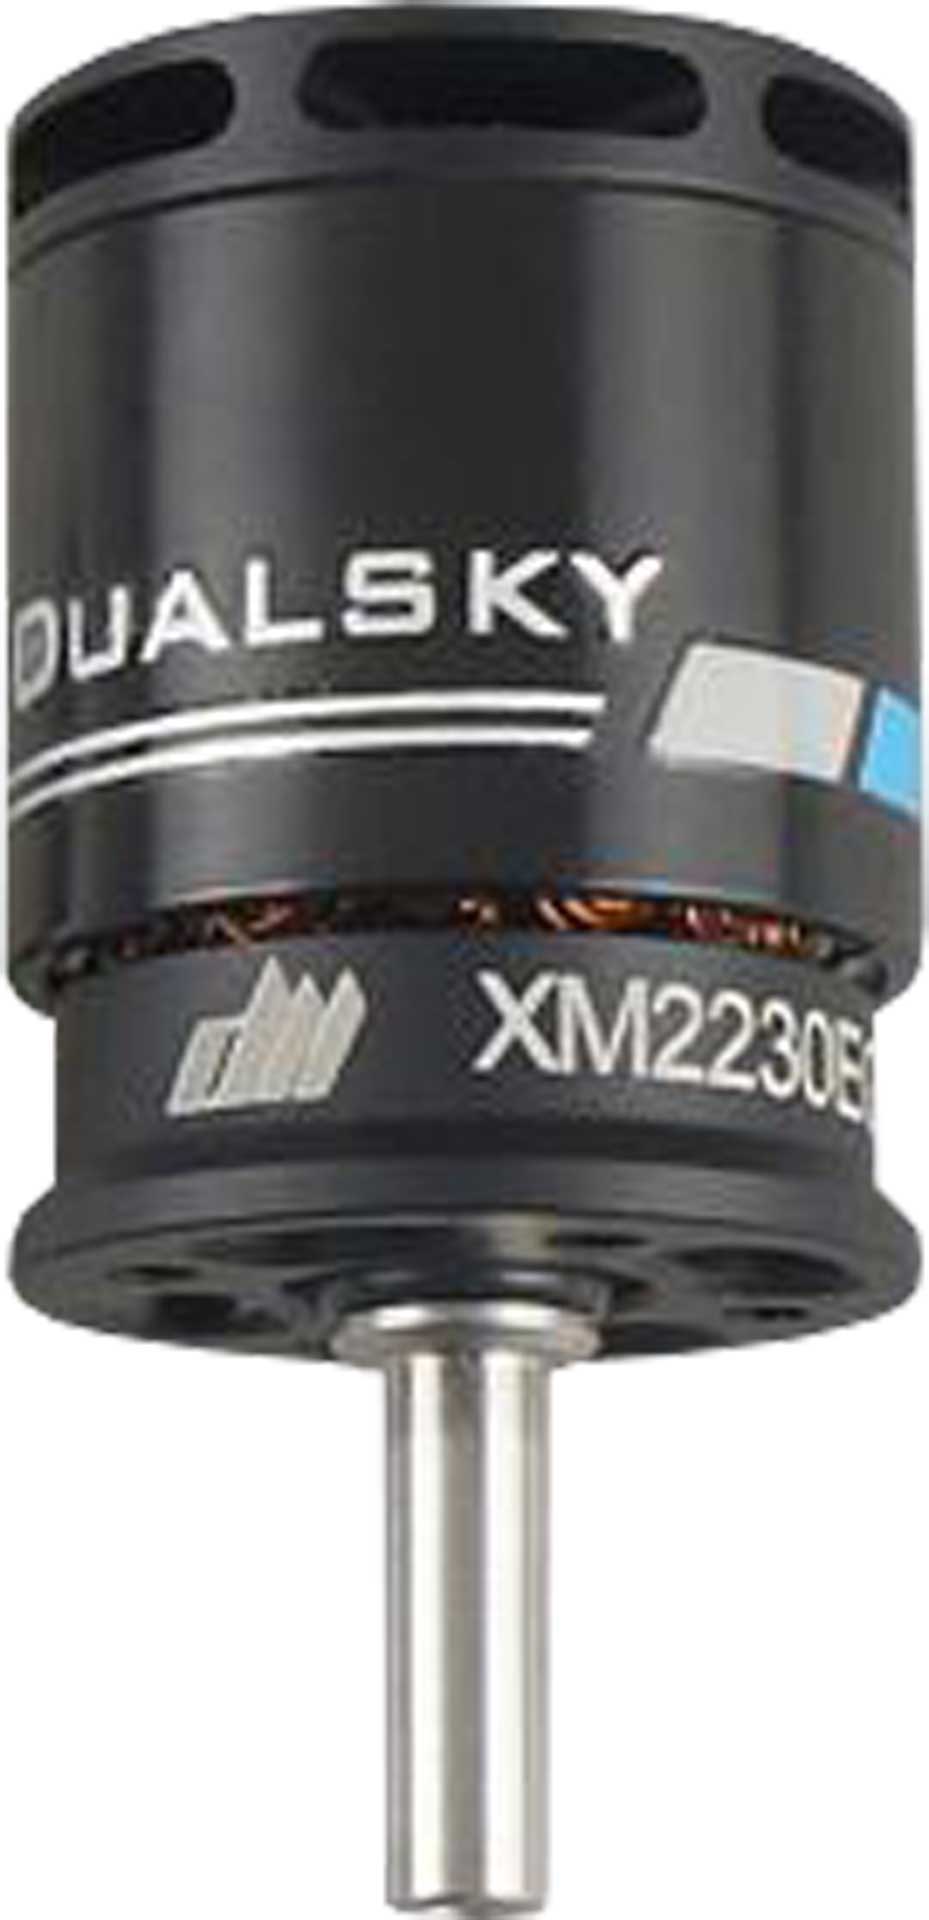 DUALSKY XMotor XM2230EG-11 K/V 2200 251,6W Brushless Motor